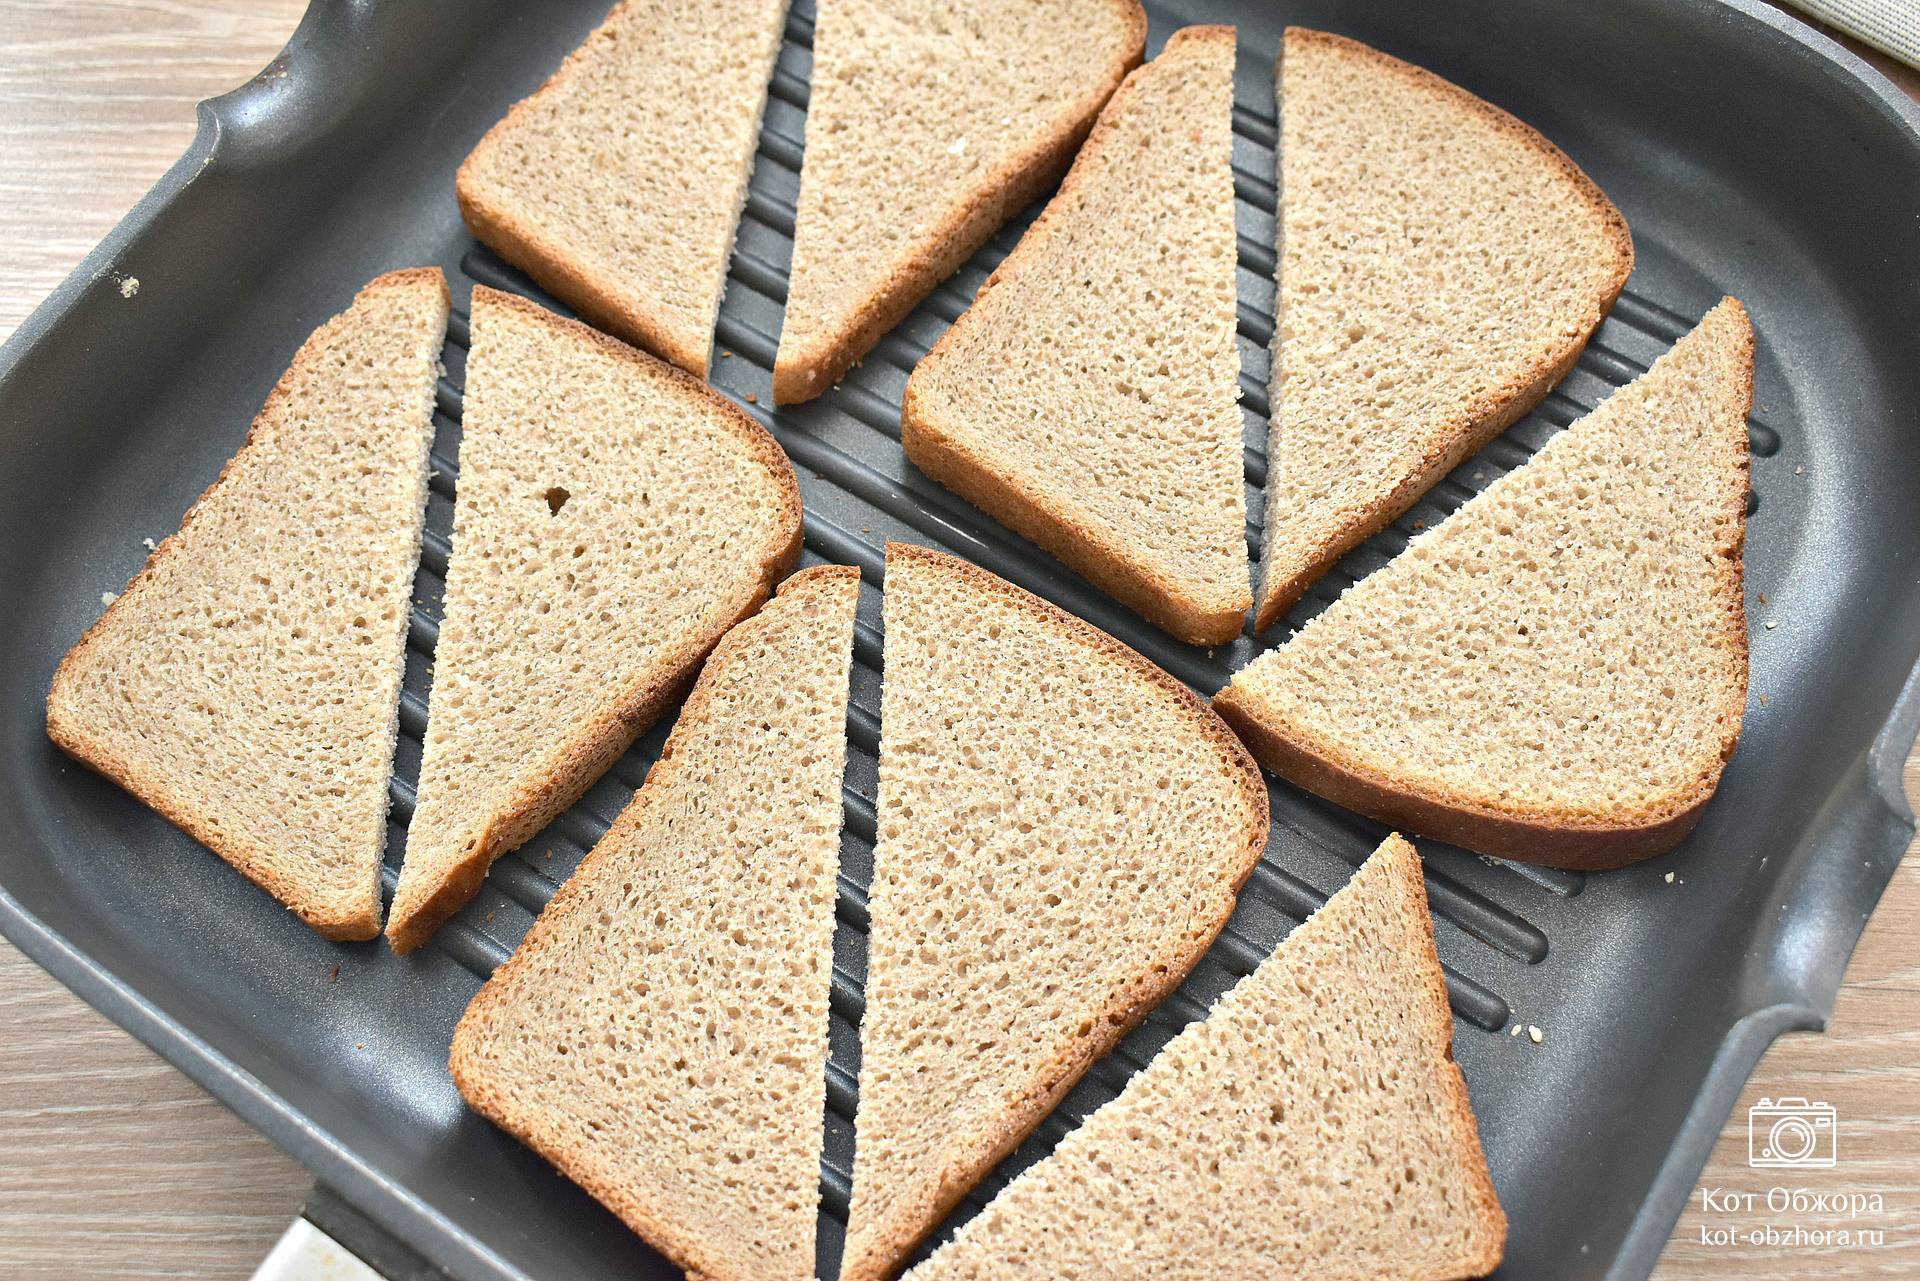 Когда нет времени готовить: 10 простых рецептов бутербродов